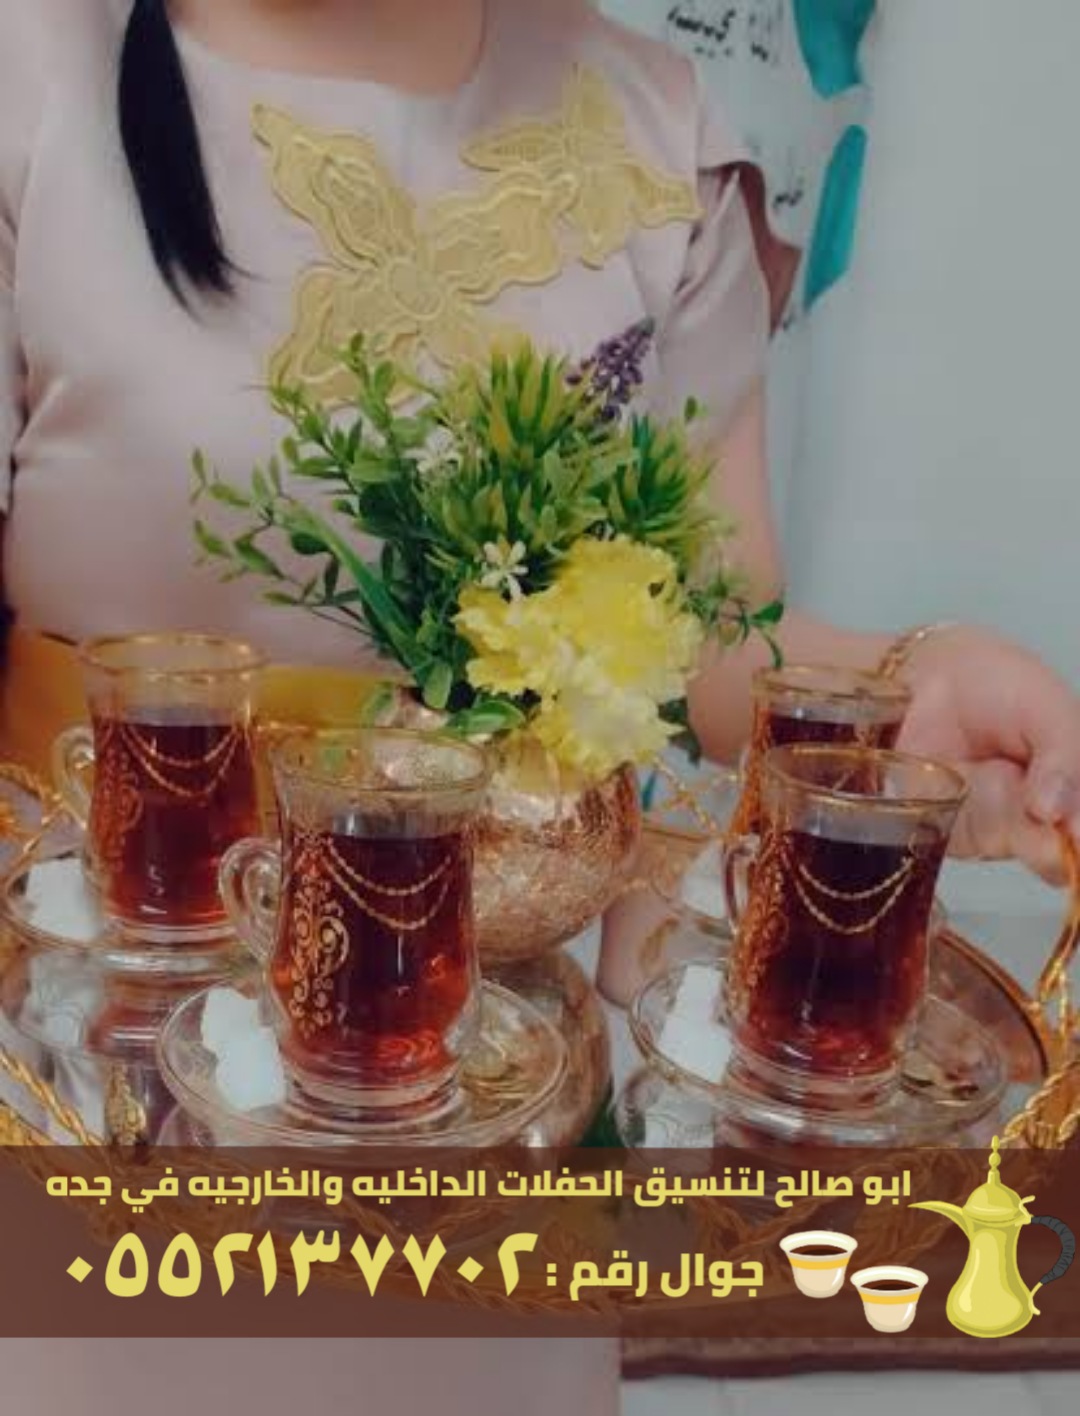 صبابين قهوة و قهوجيات في جدة, 0552137702 P_2466zqrfd4